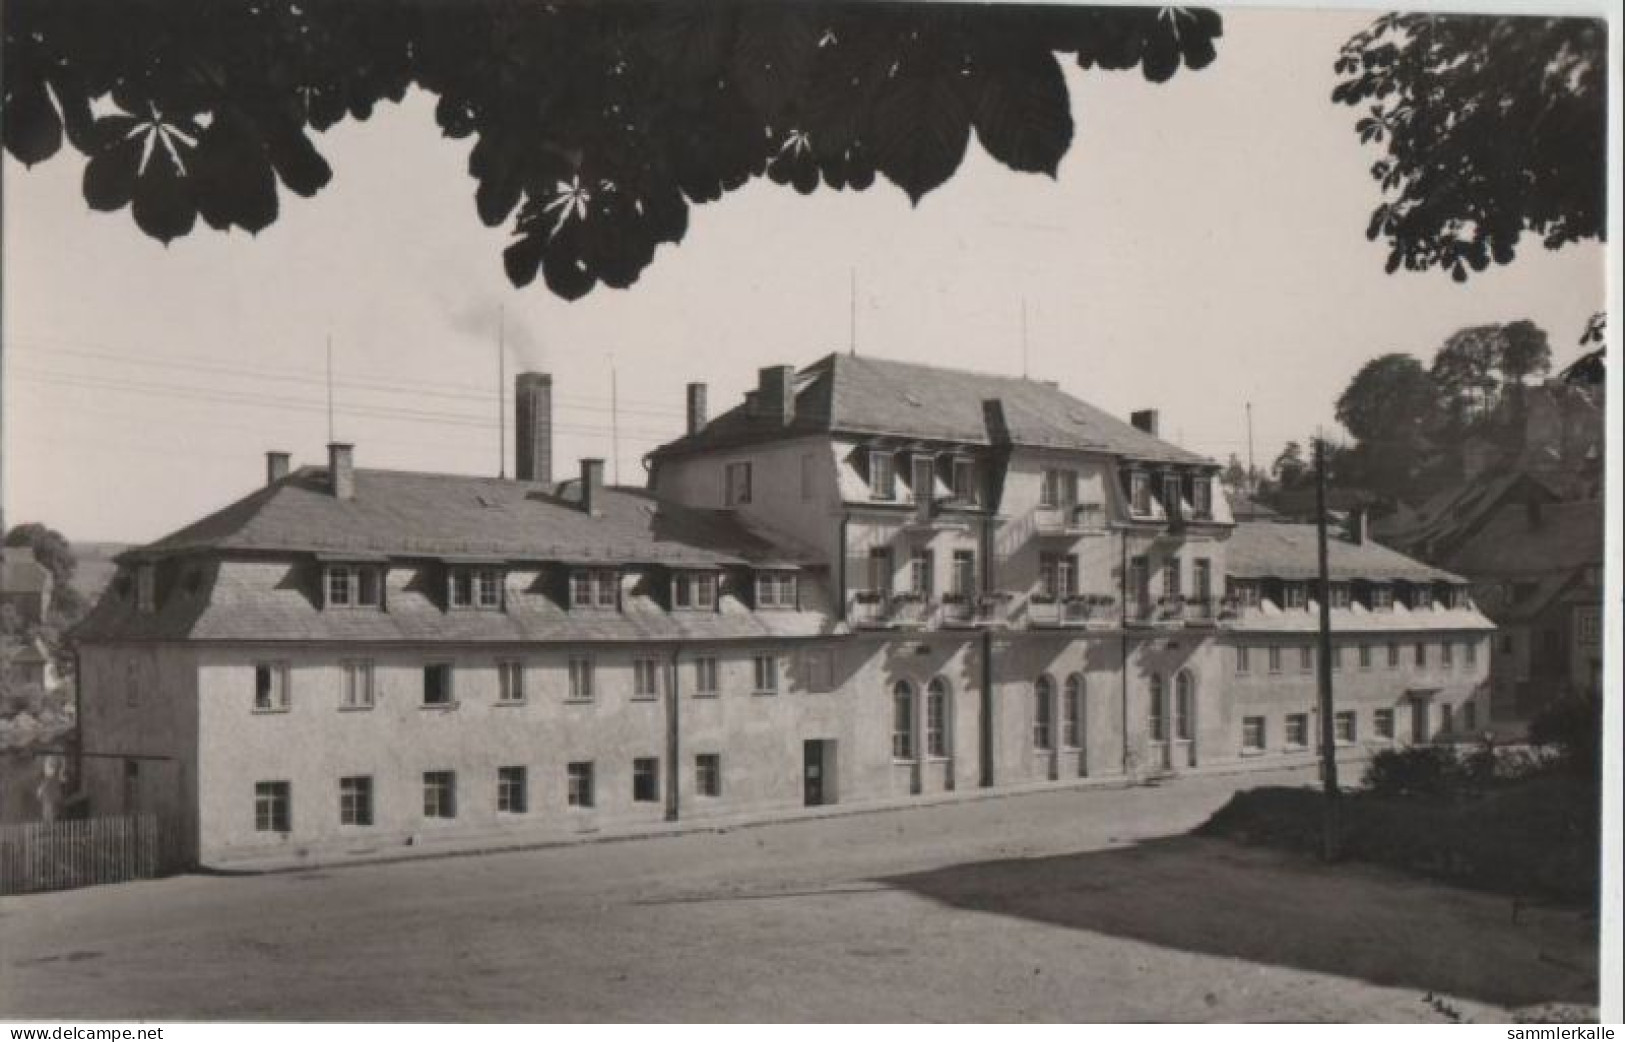 69788 - Lobenstein - Sanatorium Der SVK - 1957 - Lobenstein